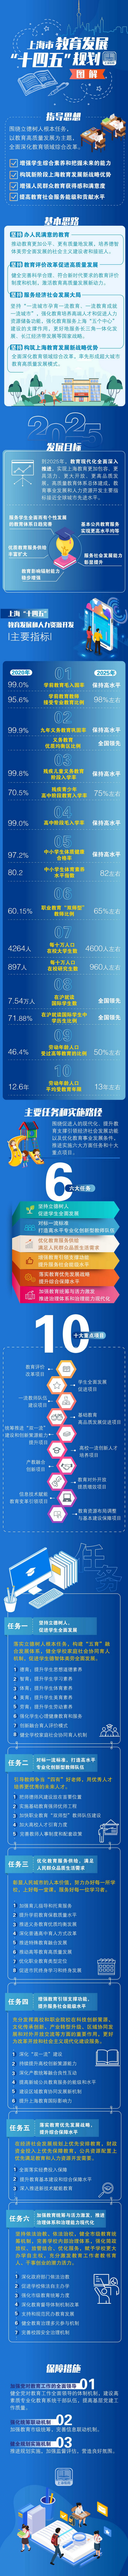 《上海市教育发展“十四五”规划》政策图解.jpg